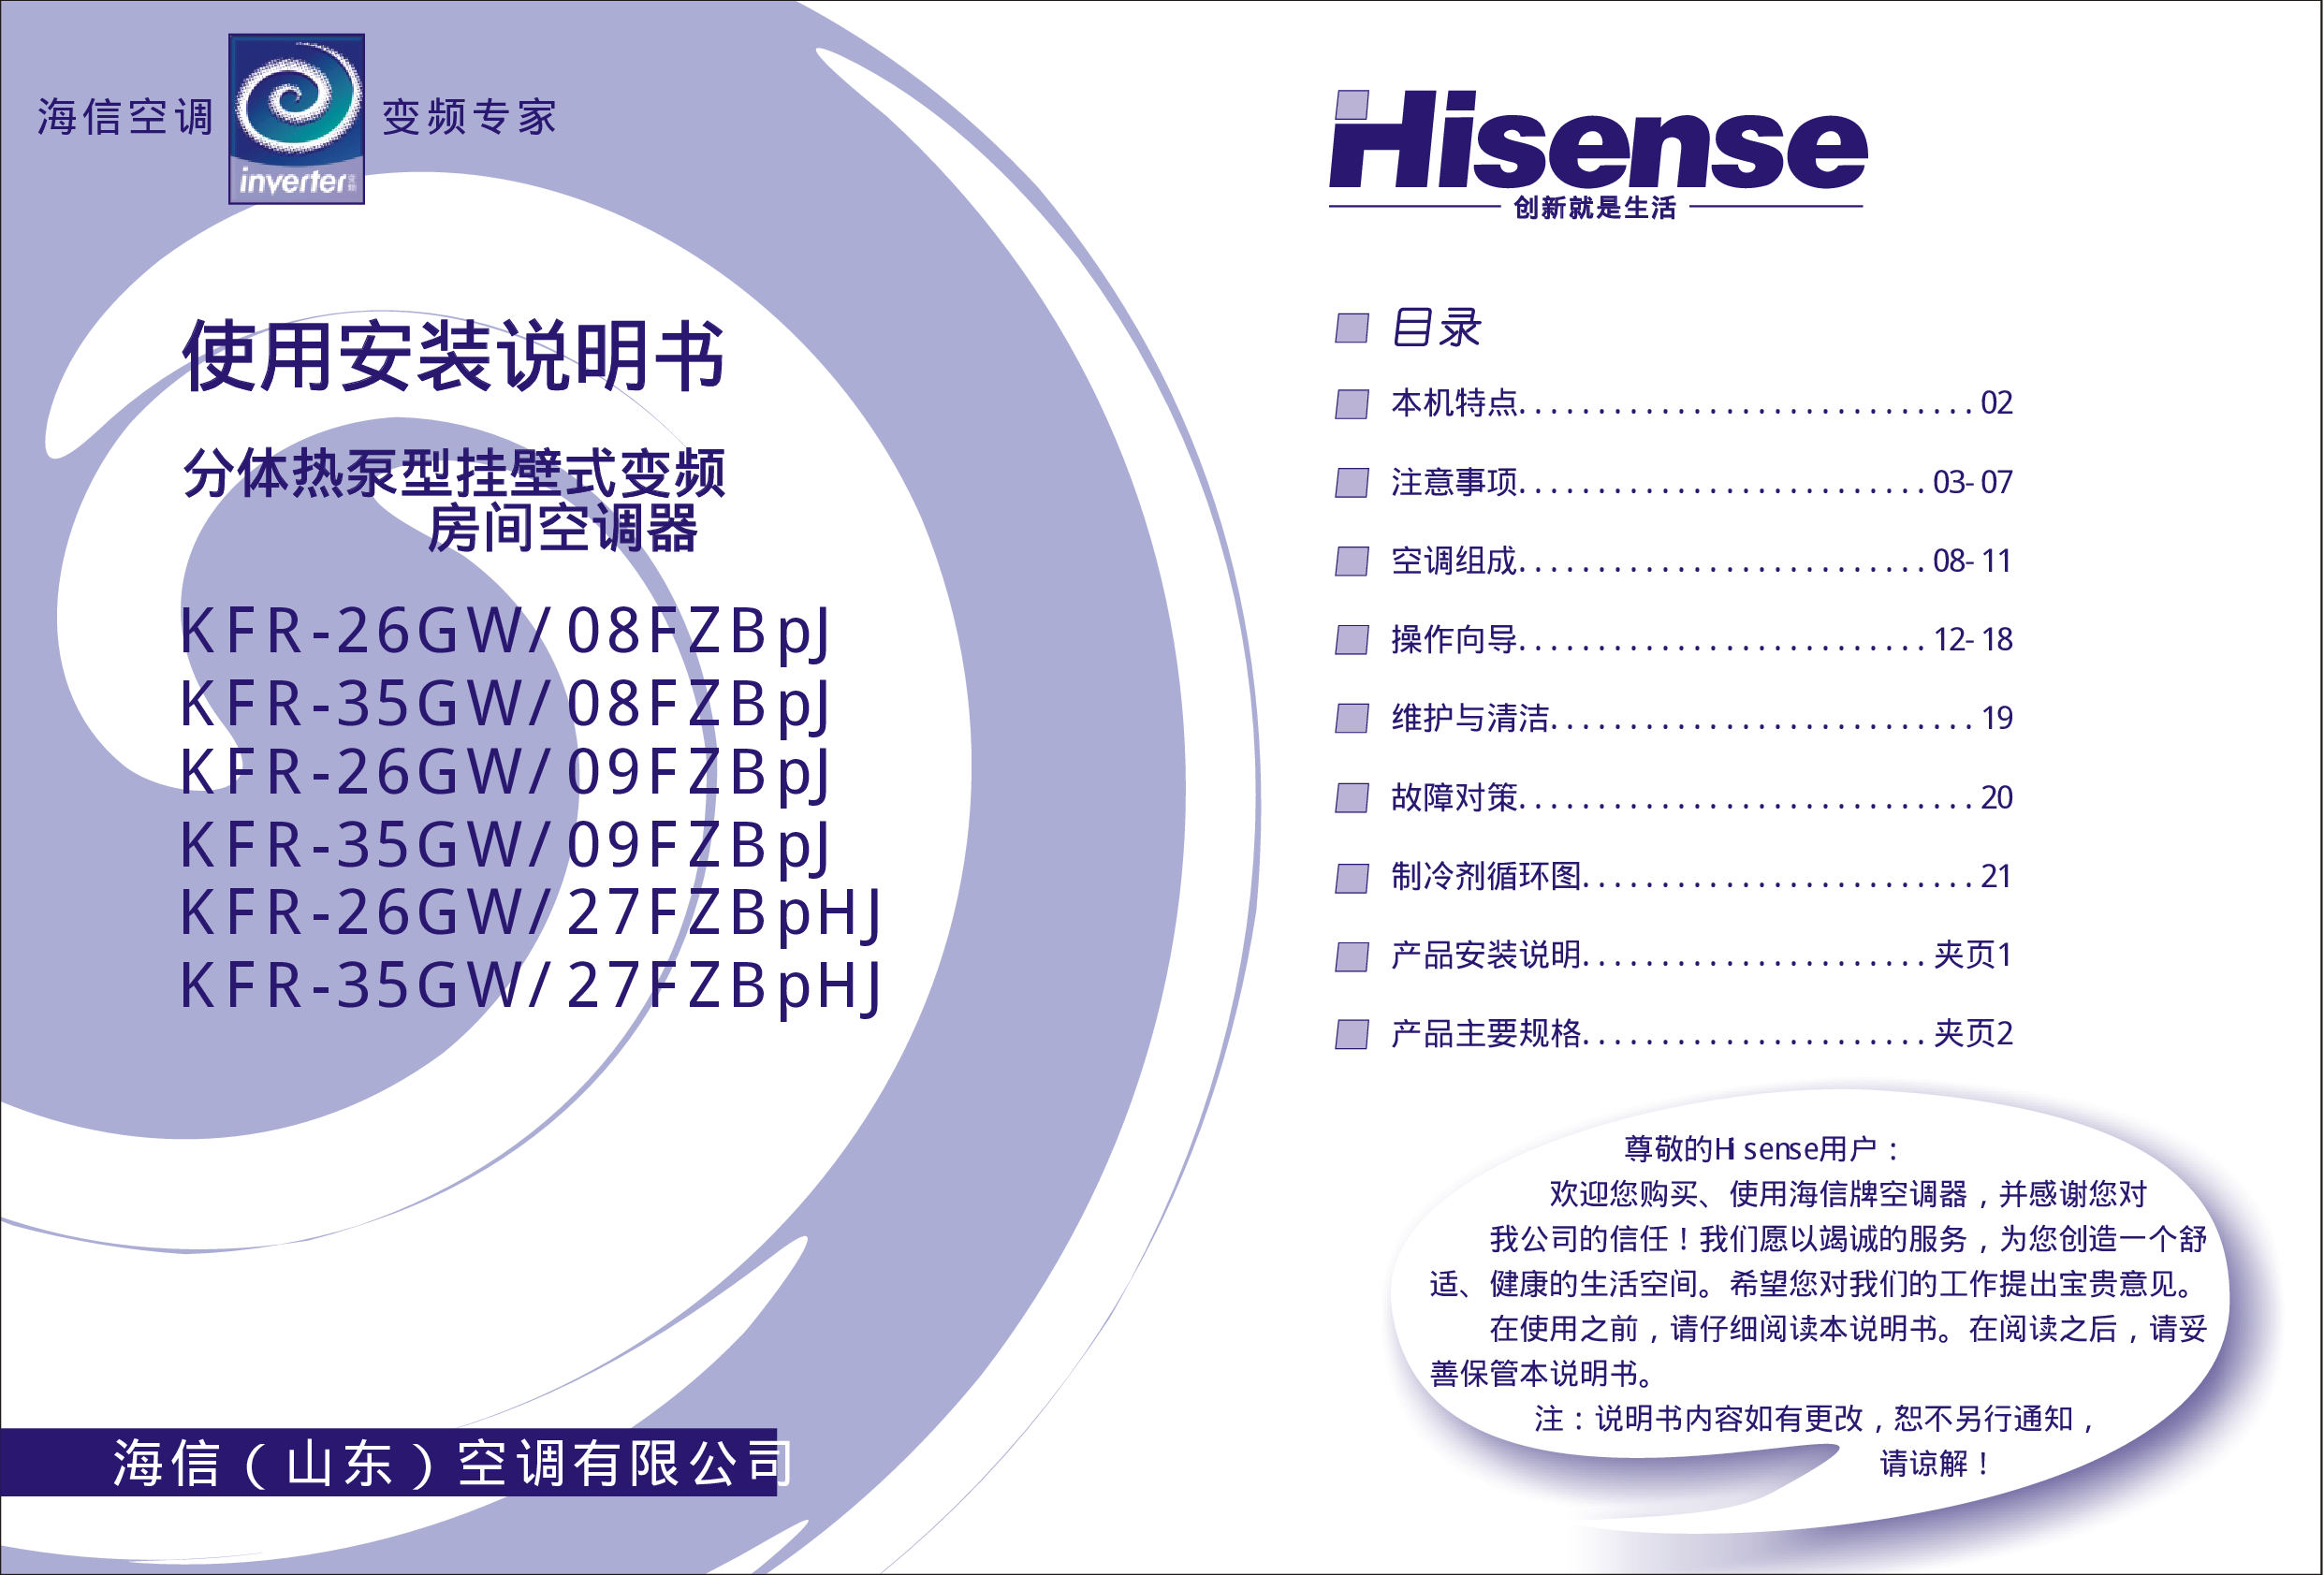 海信 Hisense KFR-26GW/08FZBpJ 使用说明书 封面